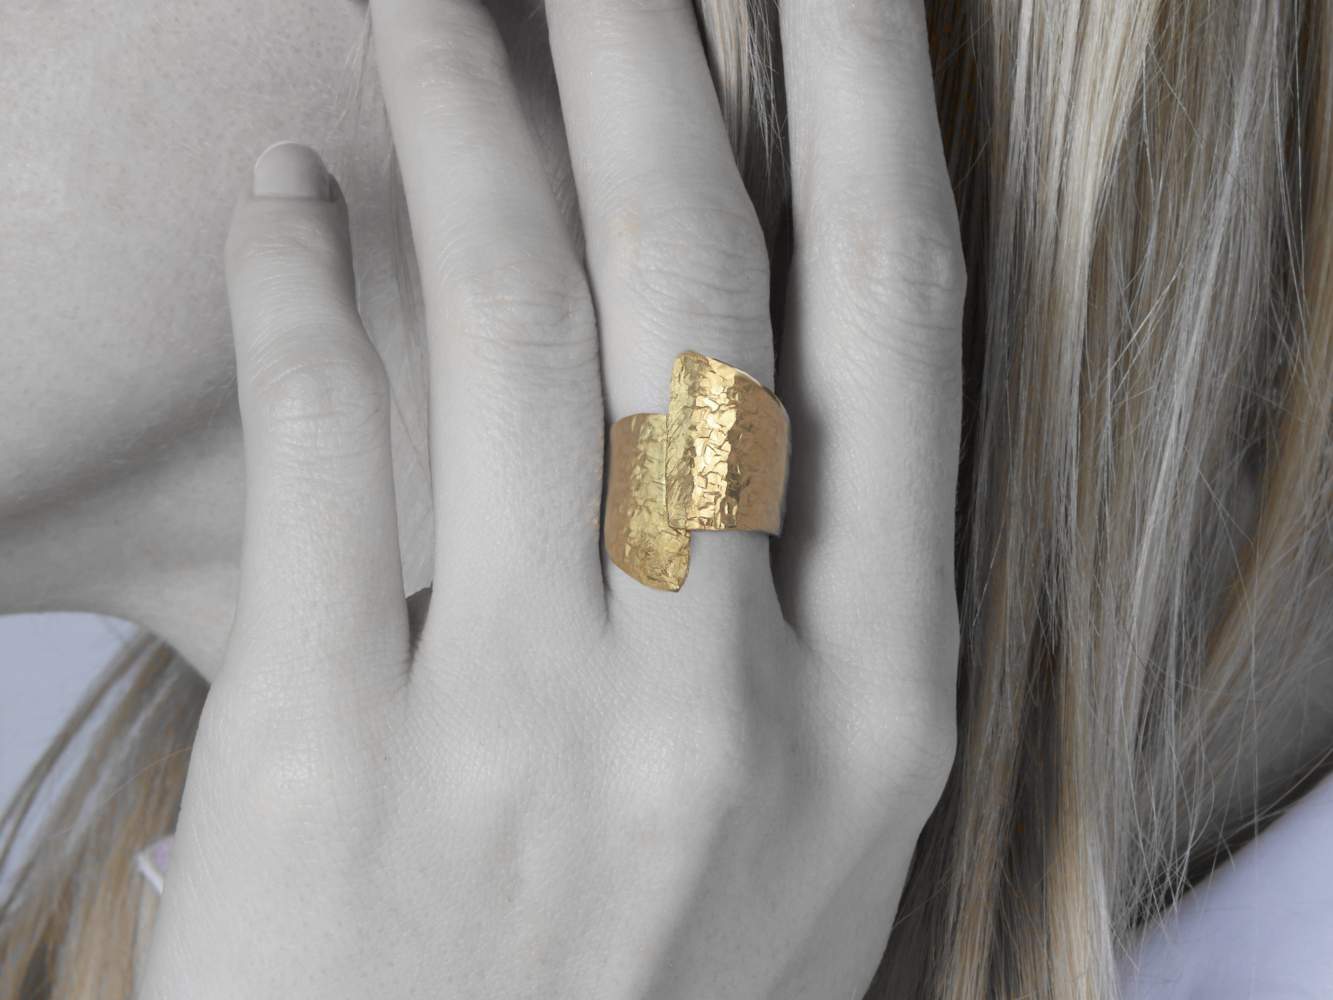 Statement Ring in goldener Knitteroptik am Finger